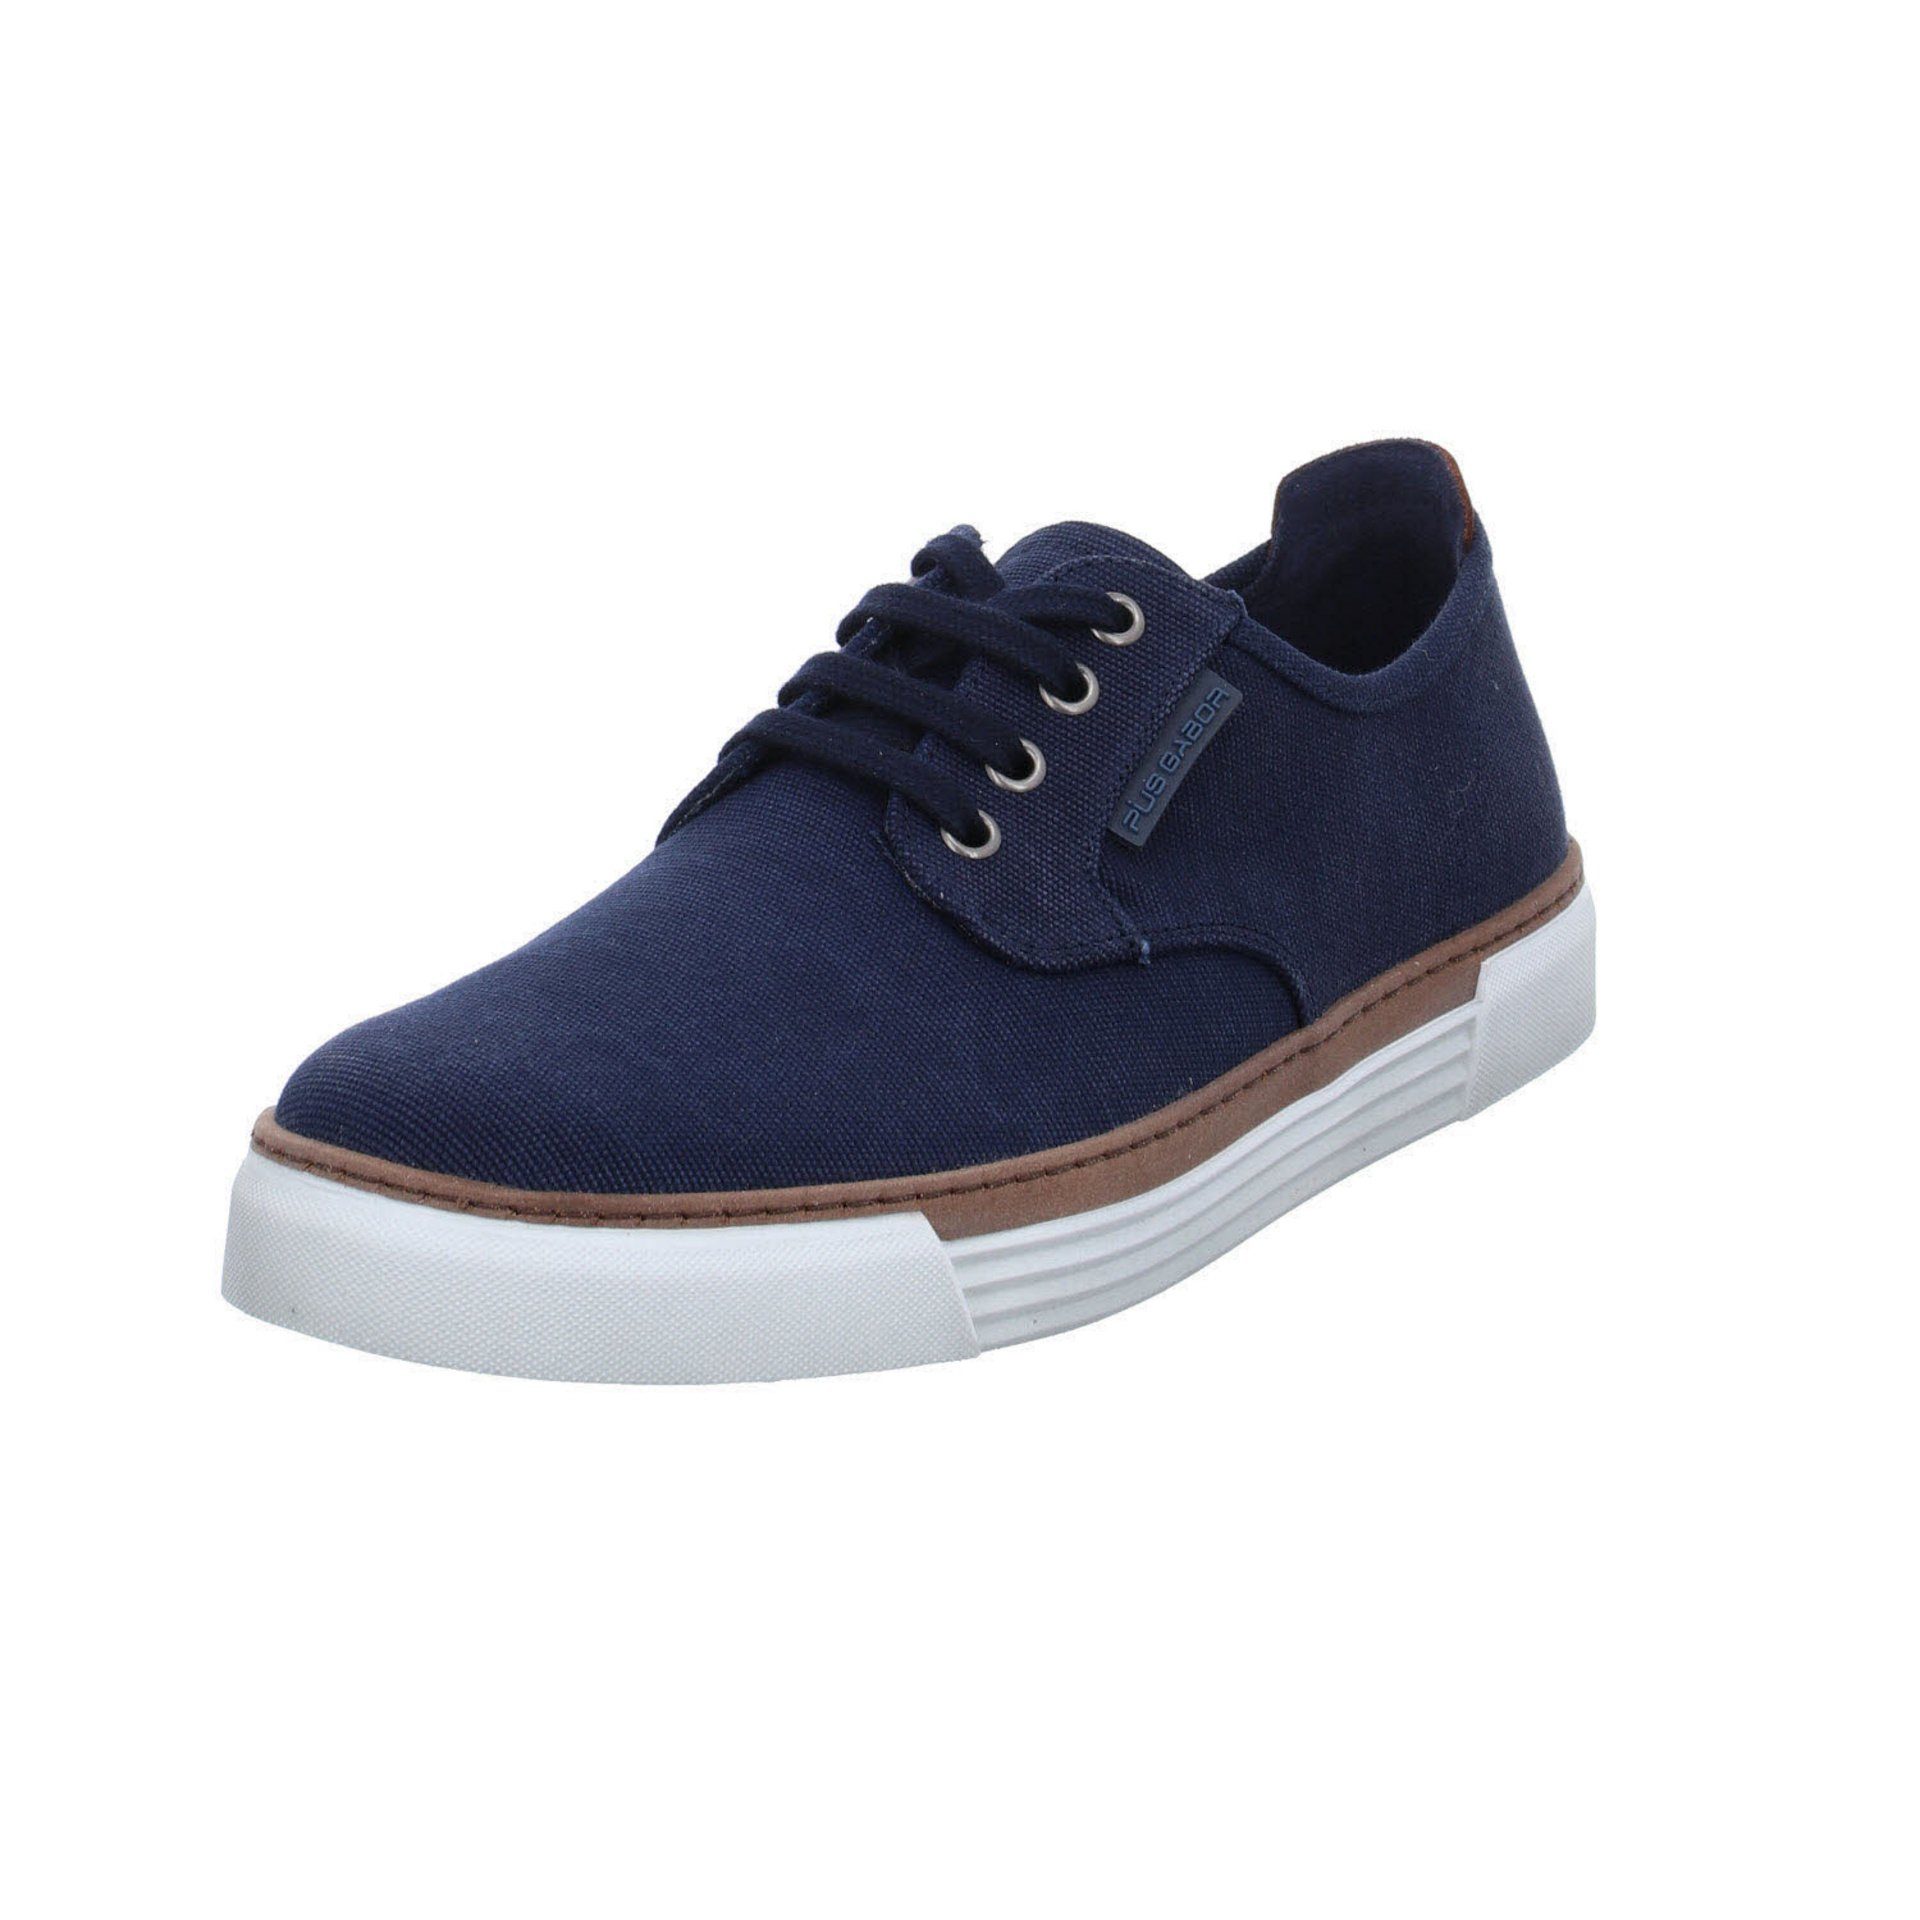 uni Textil Slip-On Gabor Sneaker Pius blau Textil dunkel Sneaker